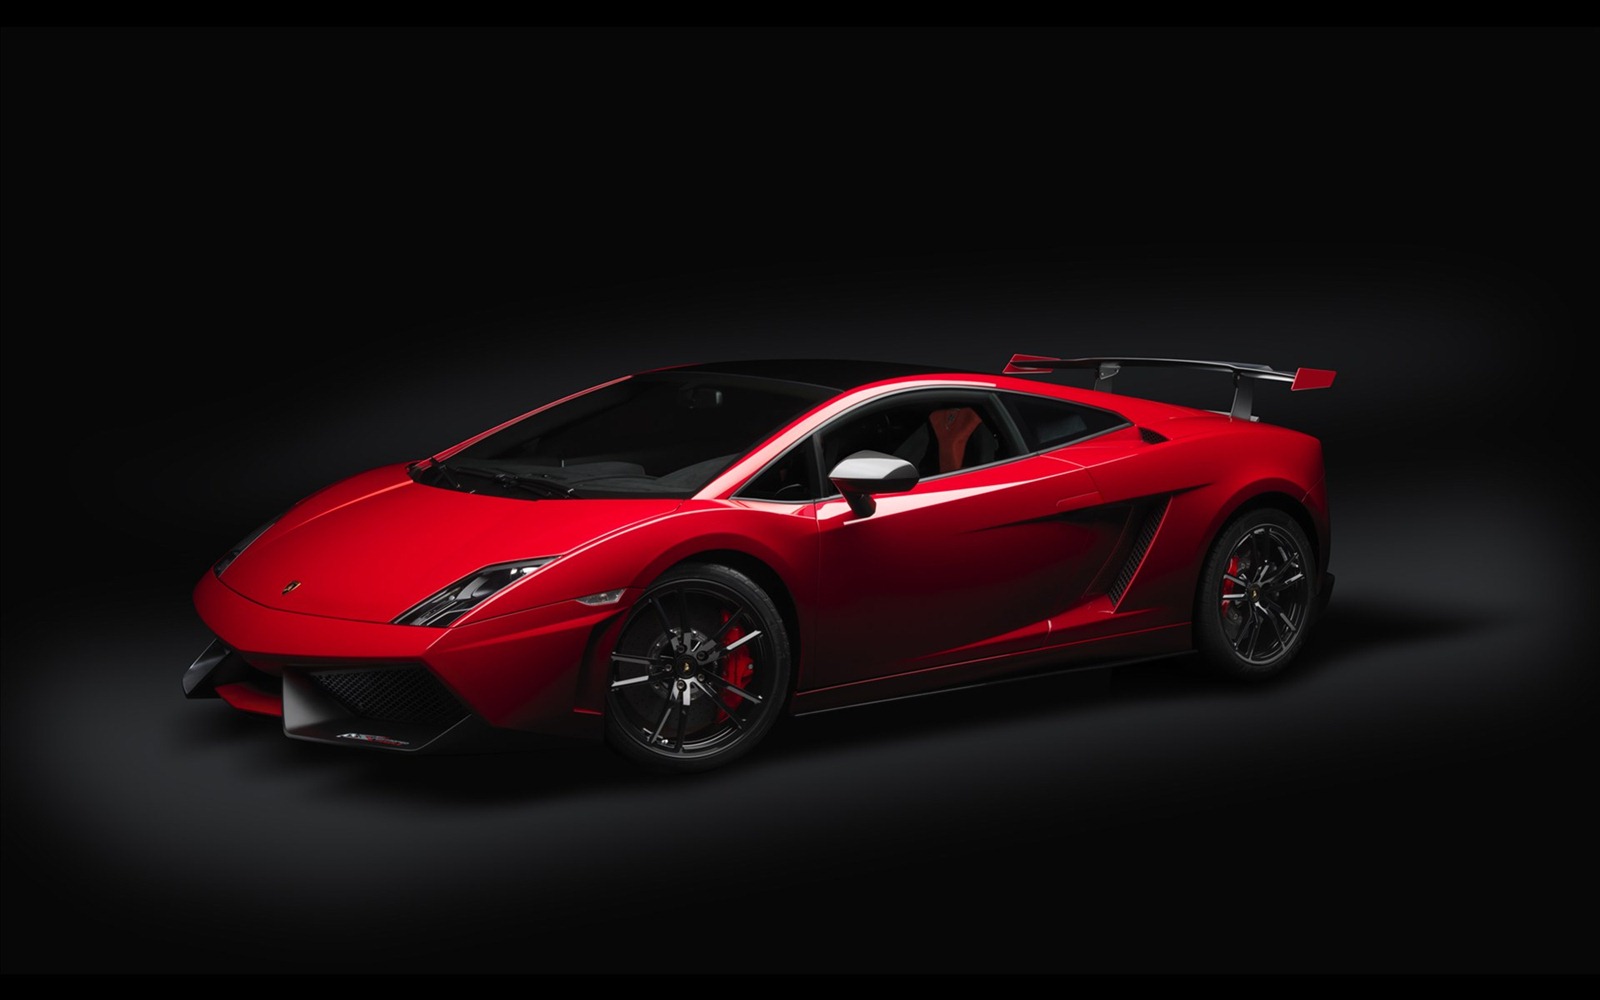 Black And Red Lamborghini Wallpaper Car Release Date Res